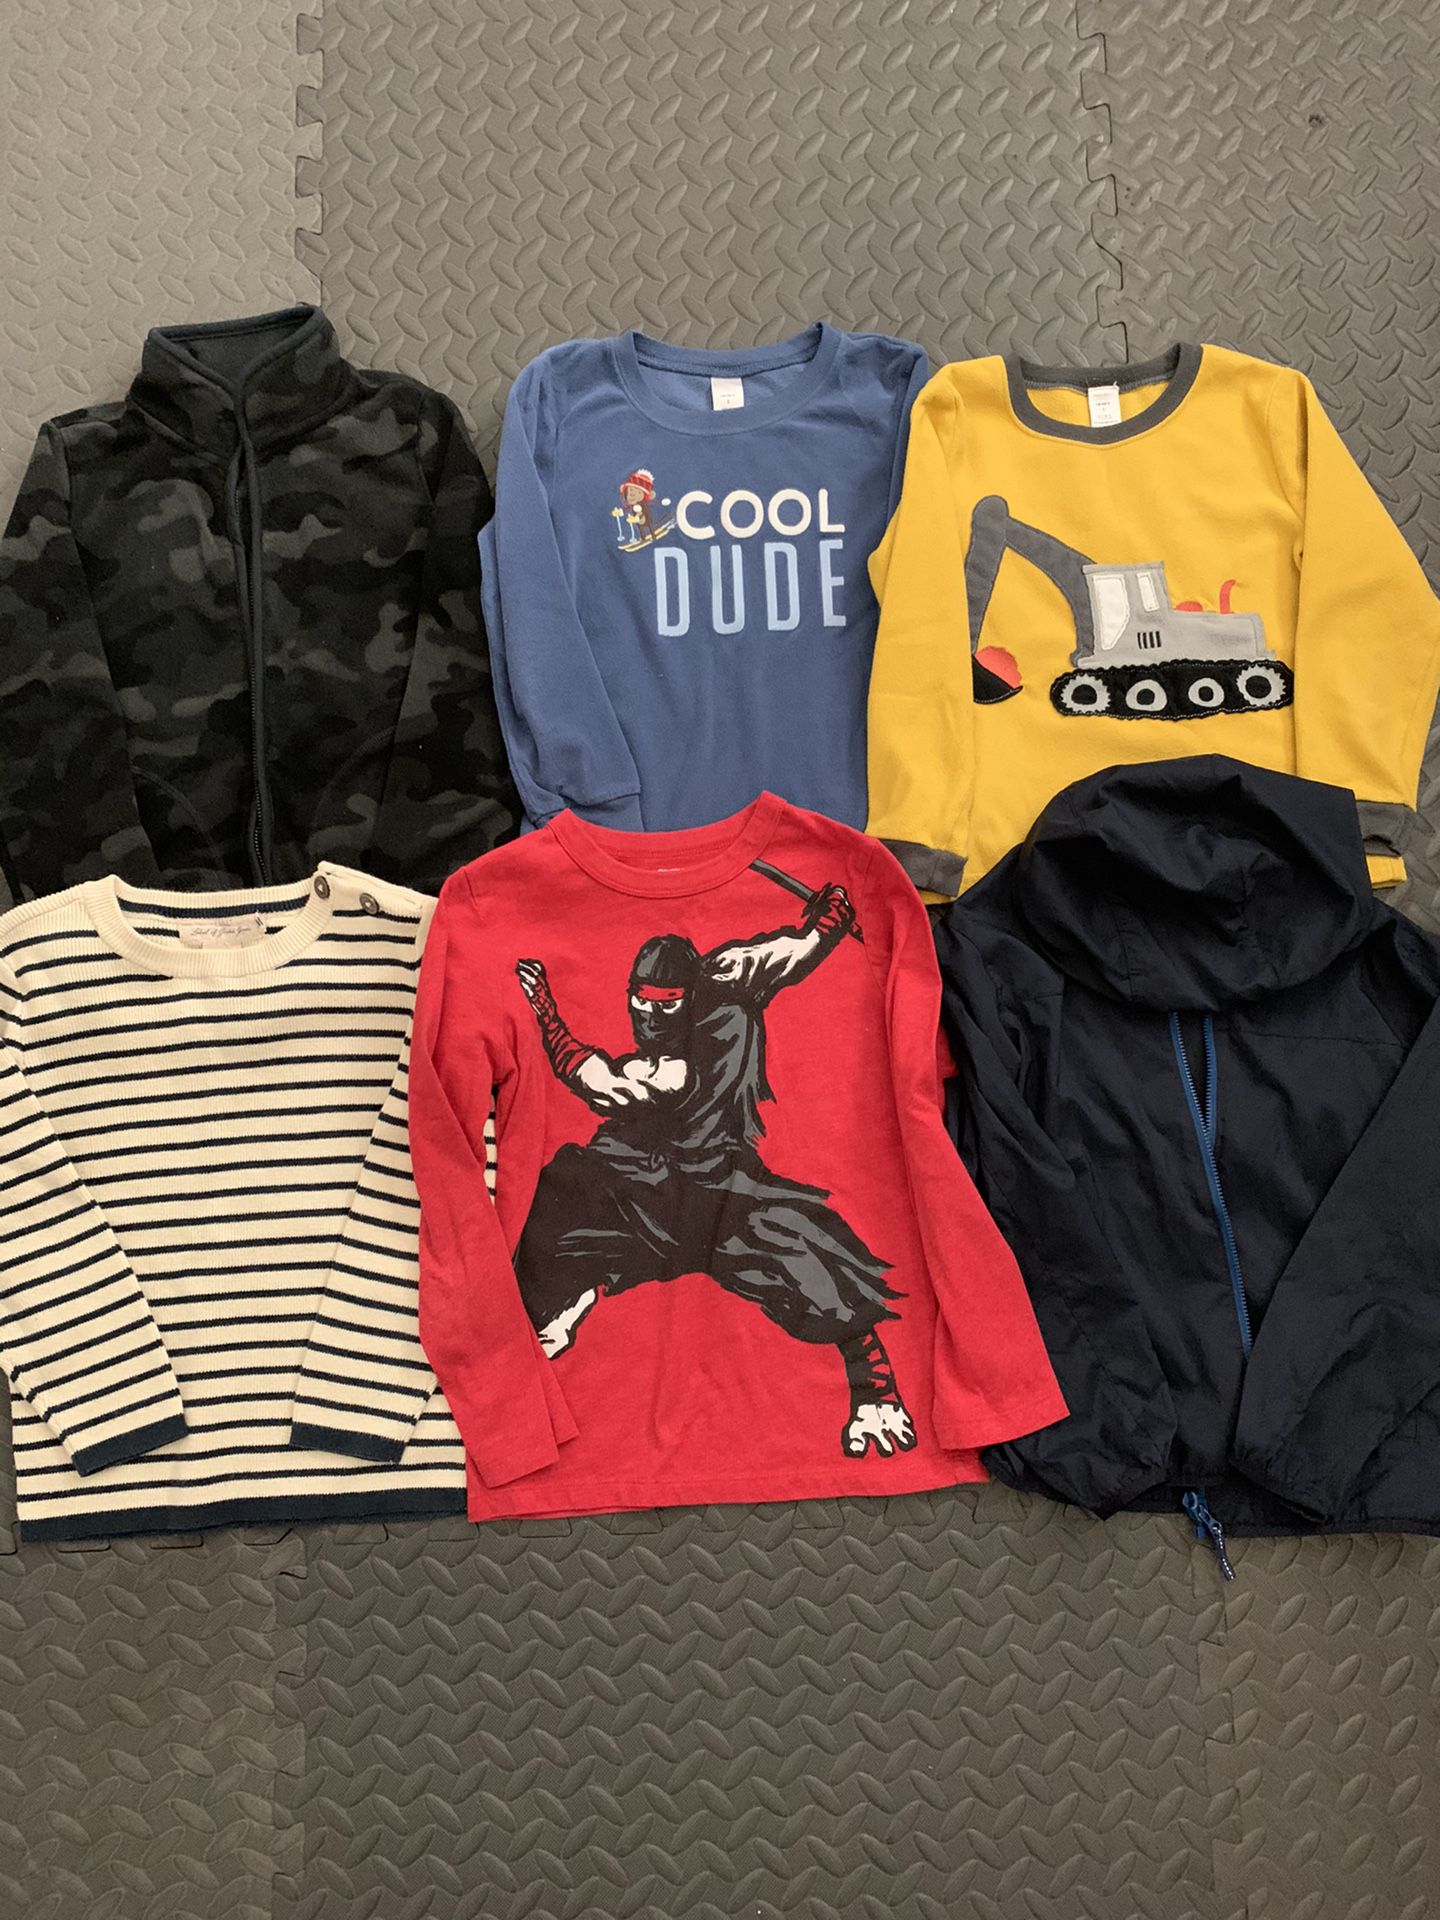 Kids clothes size 5-6